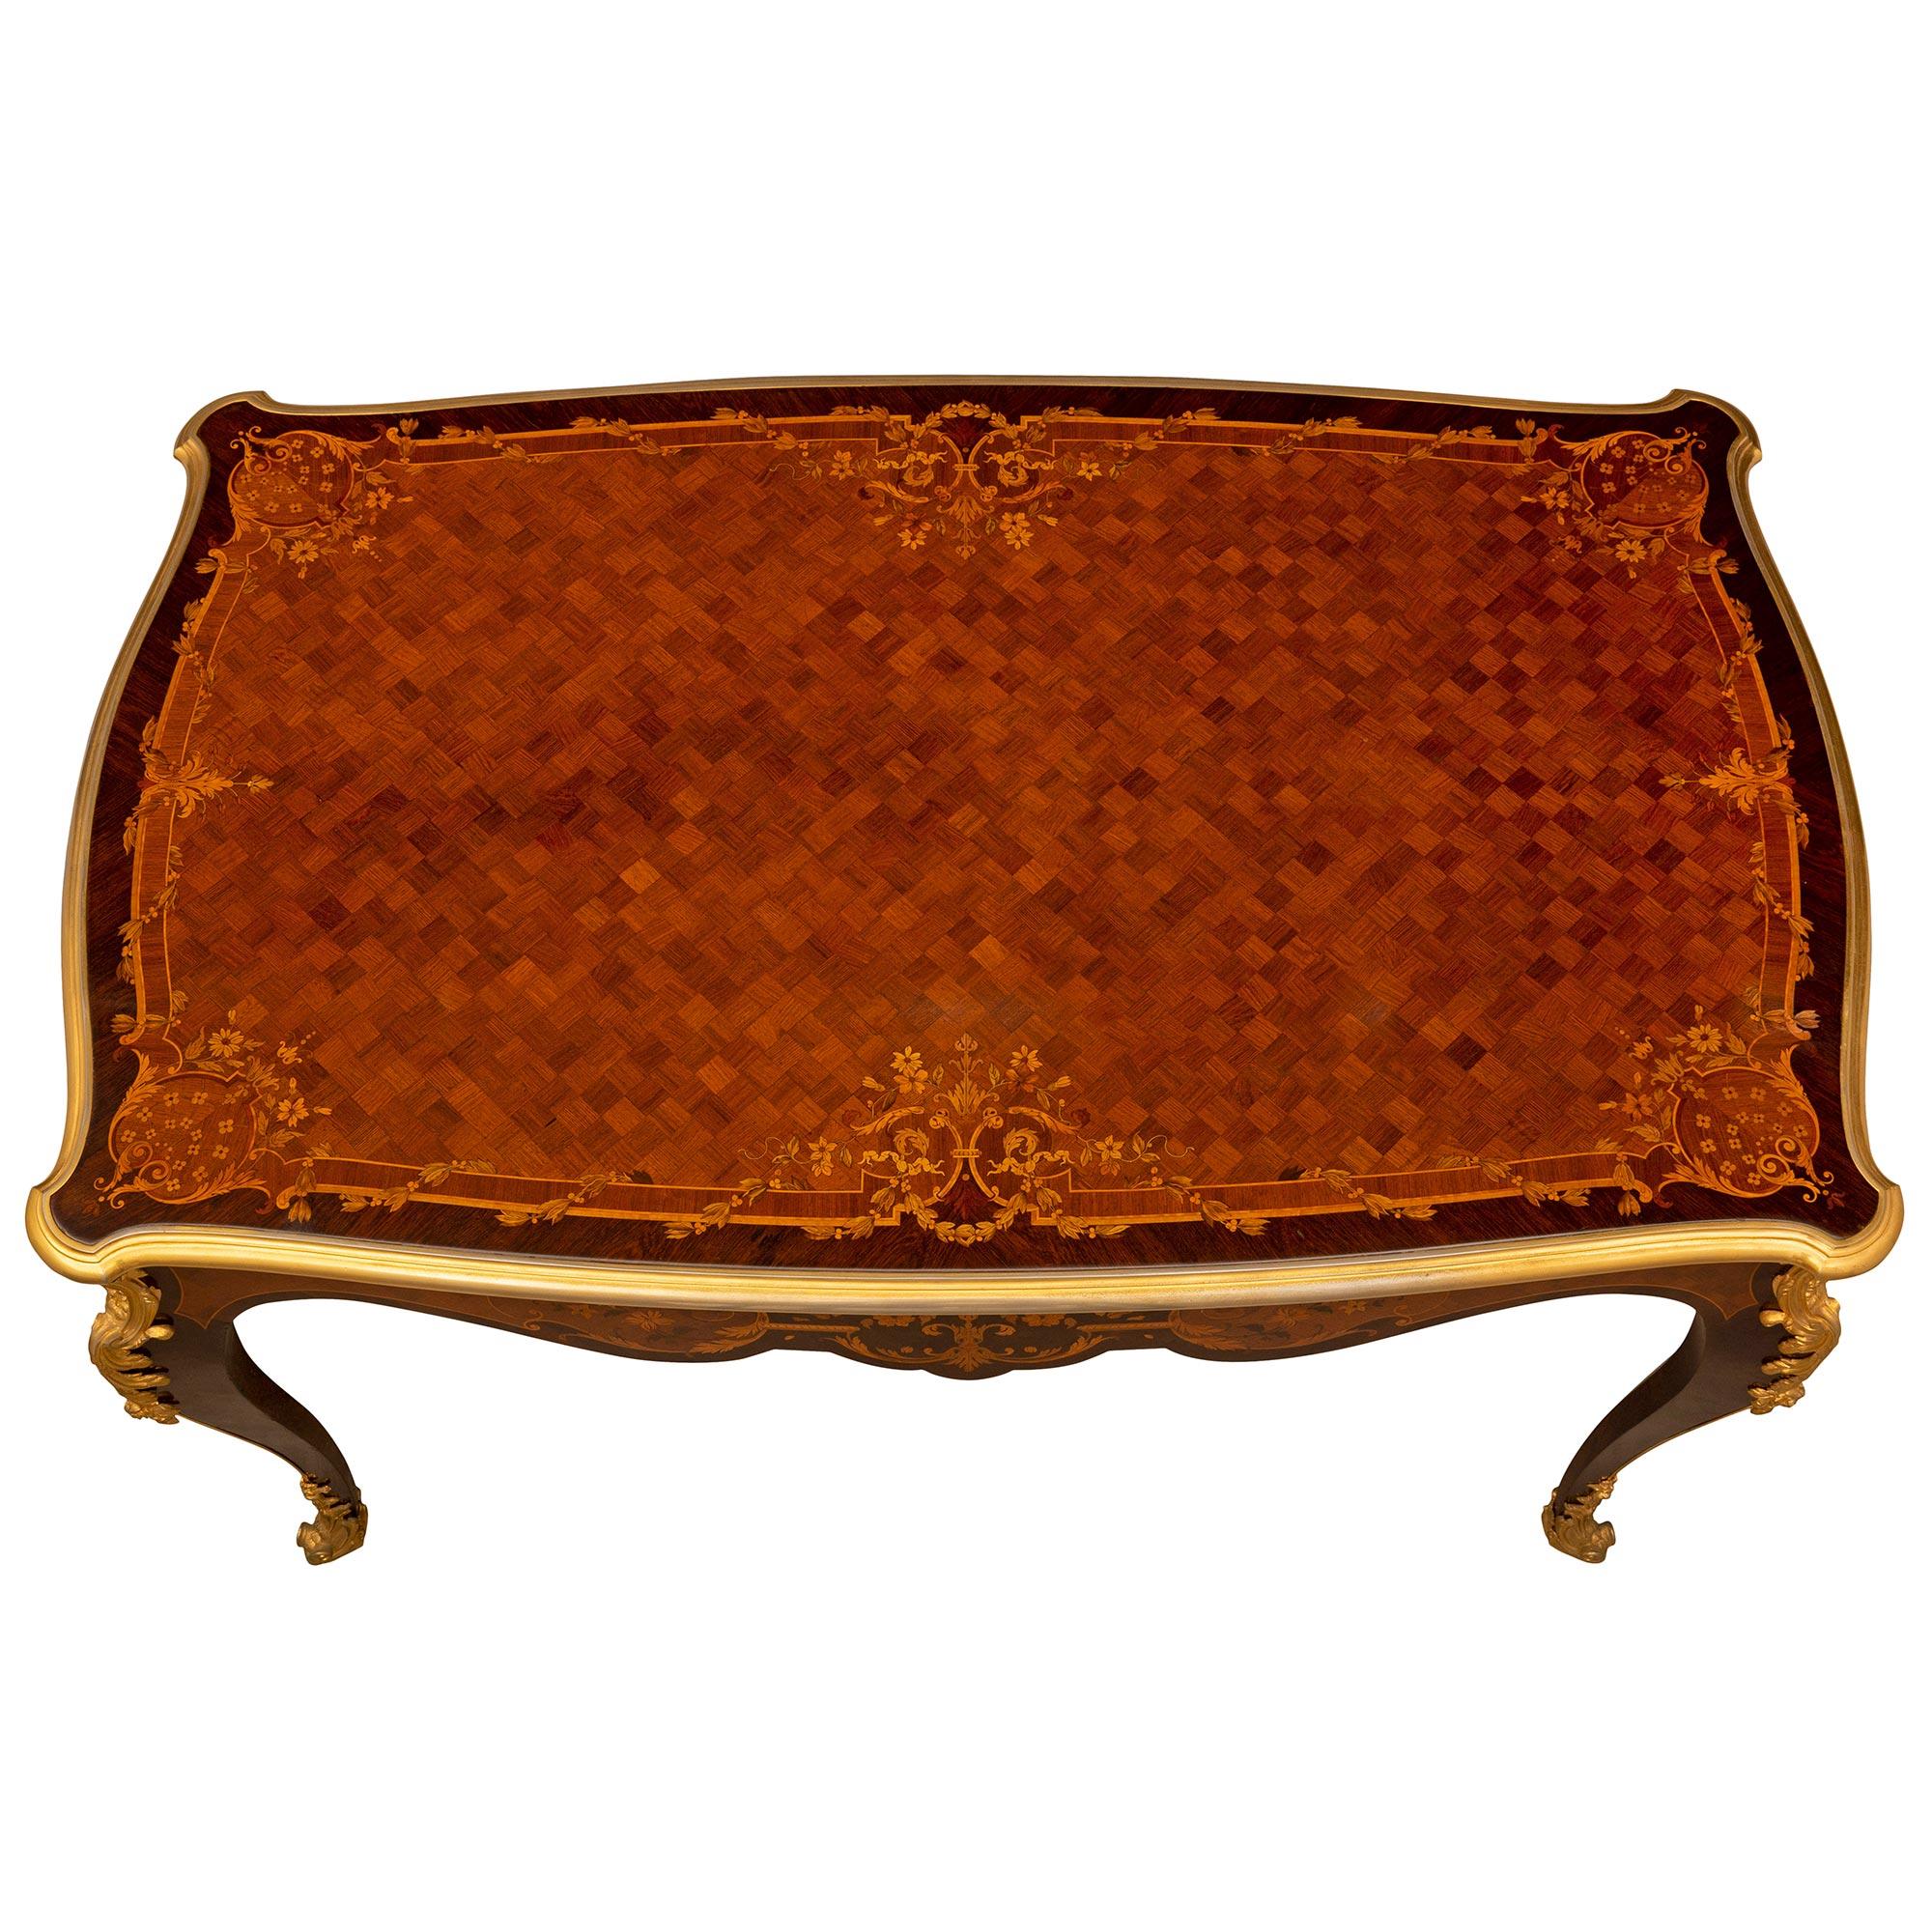 Une élégante et très haute qualité de table de centre Louis XV du 19ème siècle en bois de roi, bois exotique et bronze doré. La table rectangulaire signée BURY est surélevée par d'impressionnants pieds cabriole avec de fins sabots enveloppants en